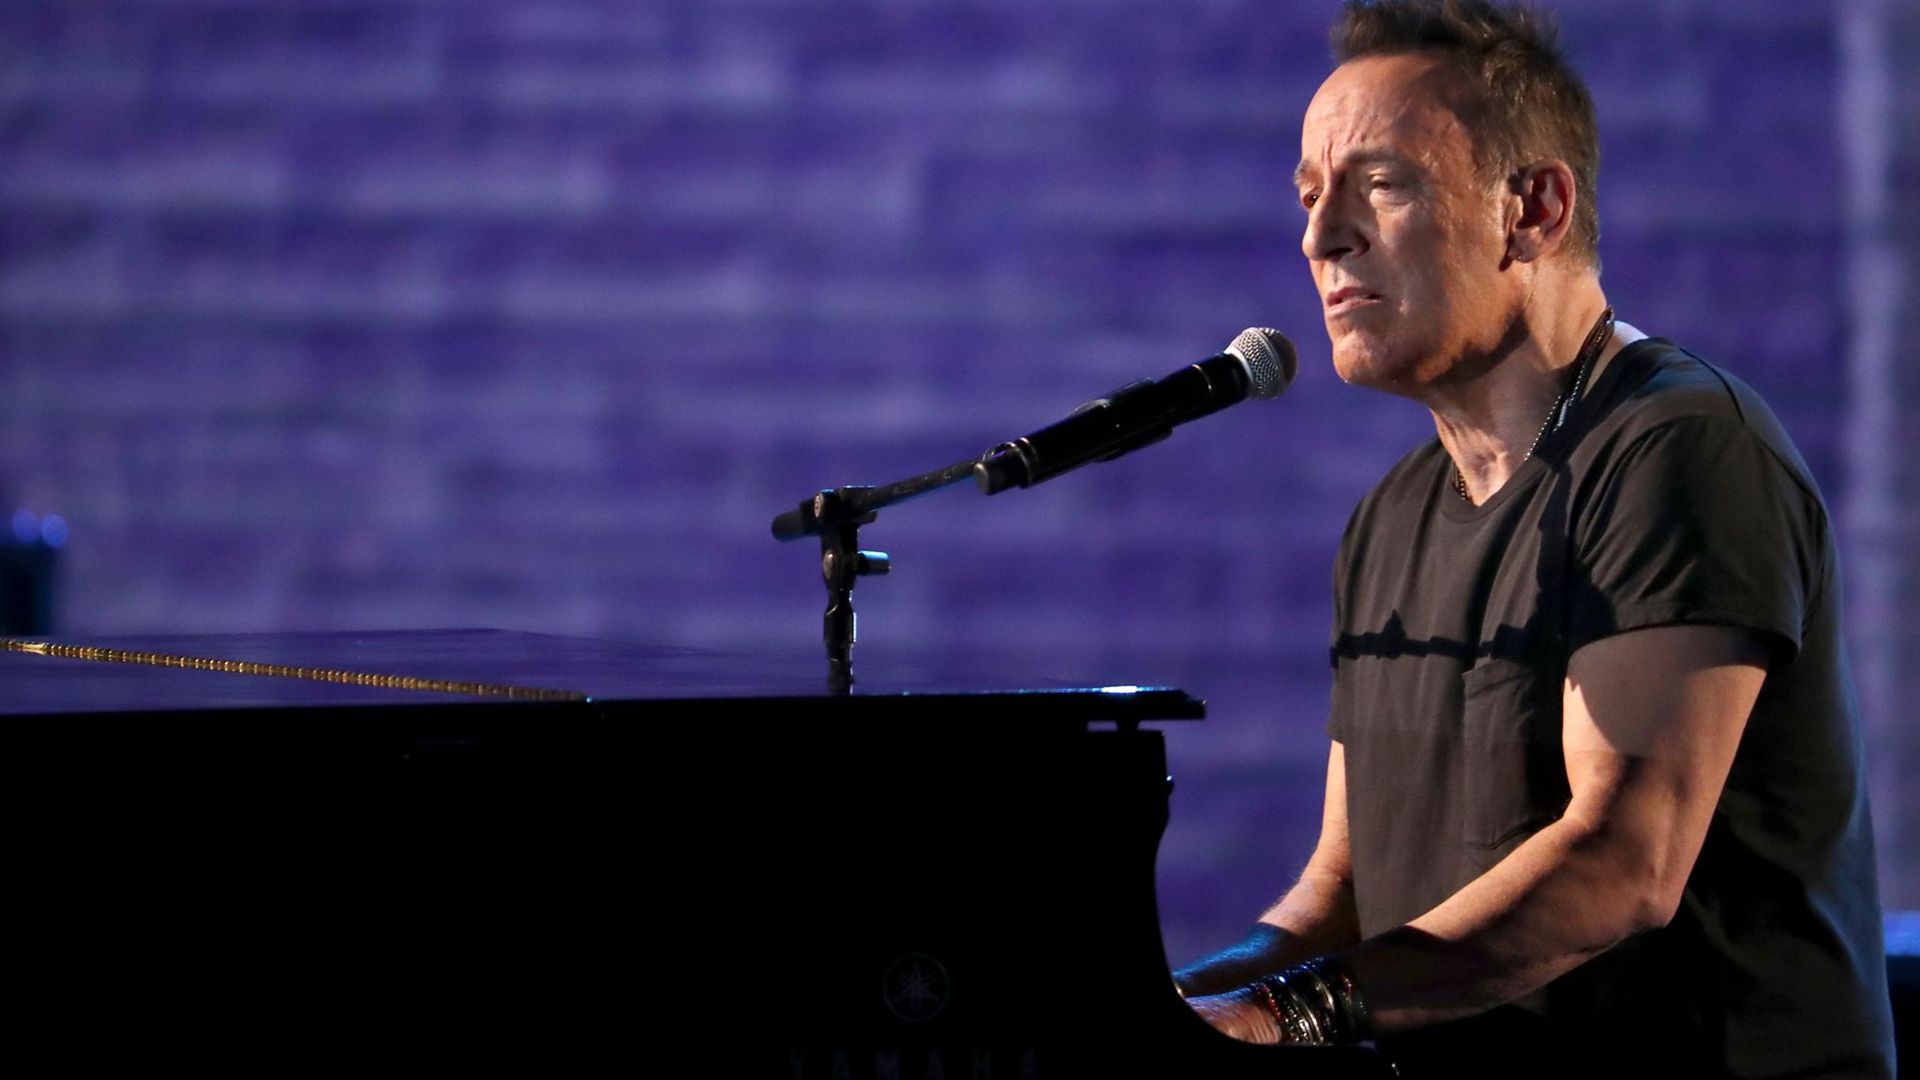 Bruce Springsteen kehrt mit Verstärkung zurück: Als Frontmann seiner vor rund 45 Jahren gegründeten E Street Band legt er im Oktober sein neues Album „Letter To You“ vor.